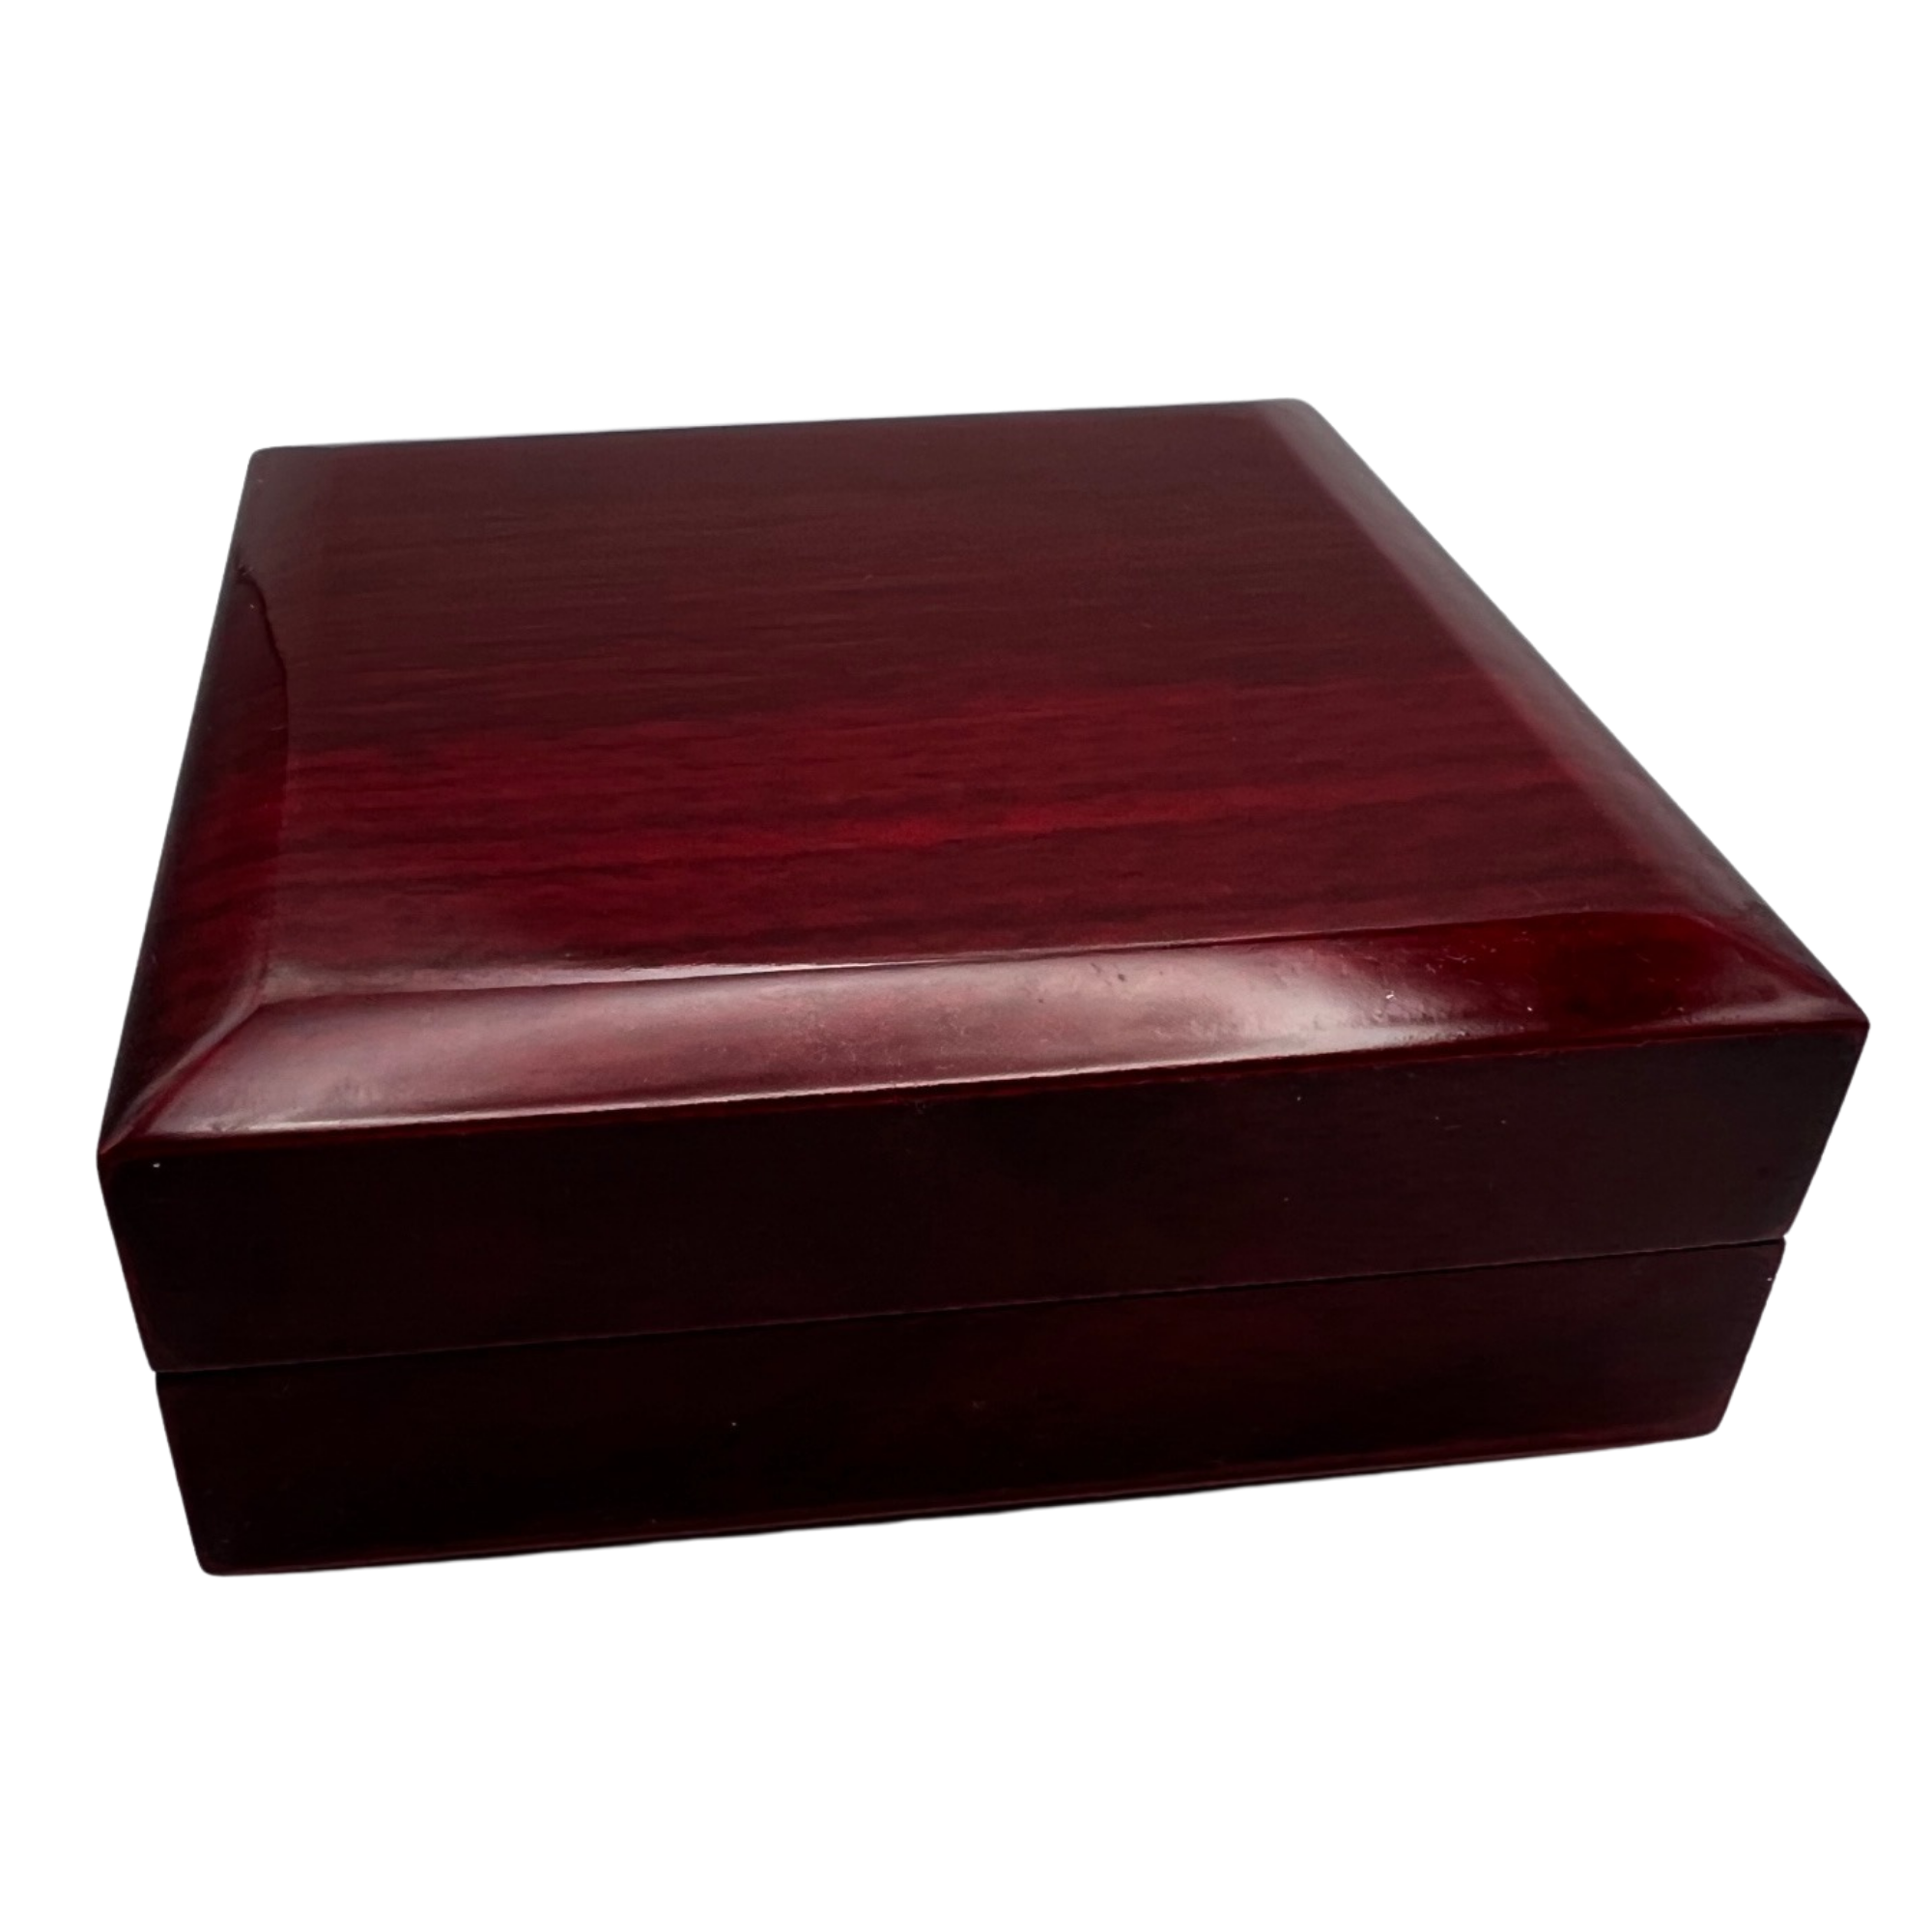 Mahogany Style Gift Box